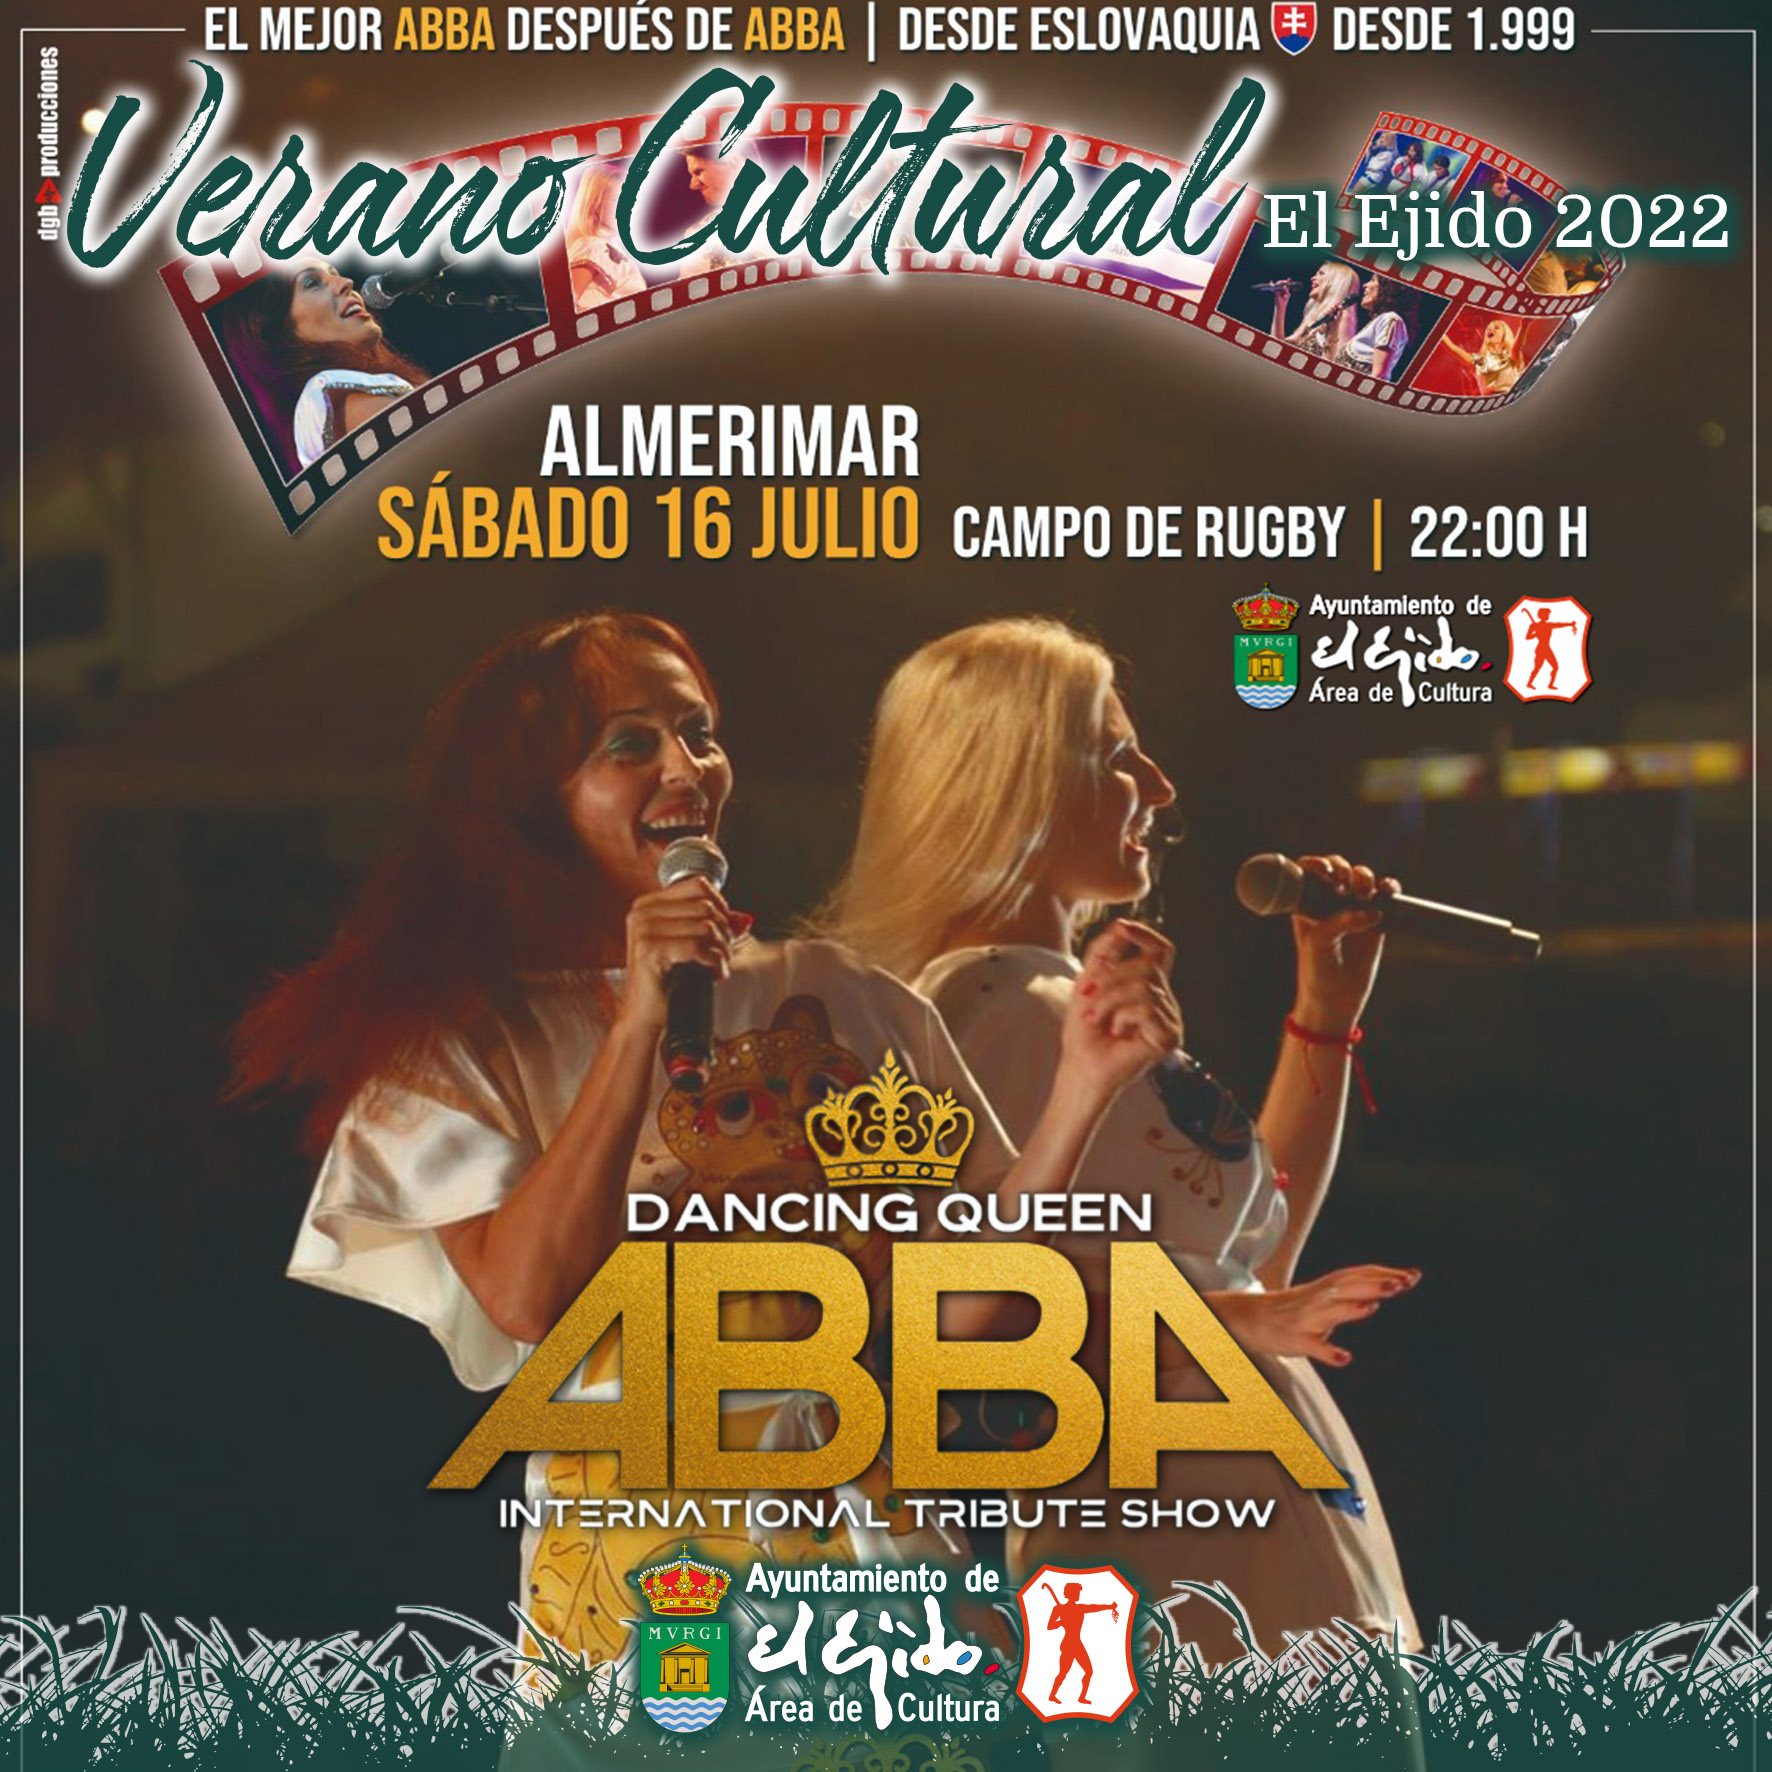 Verano Cultural 2022 de El Ejido – Dancing Queen ABBA International Tribute Show